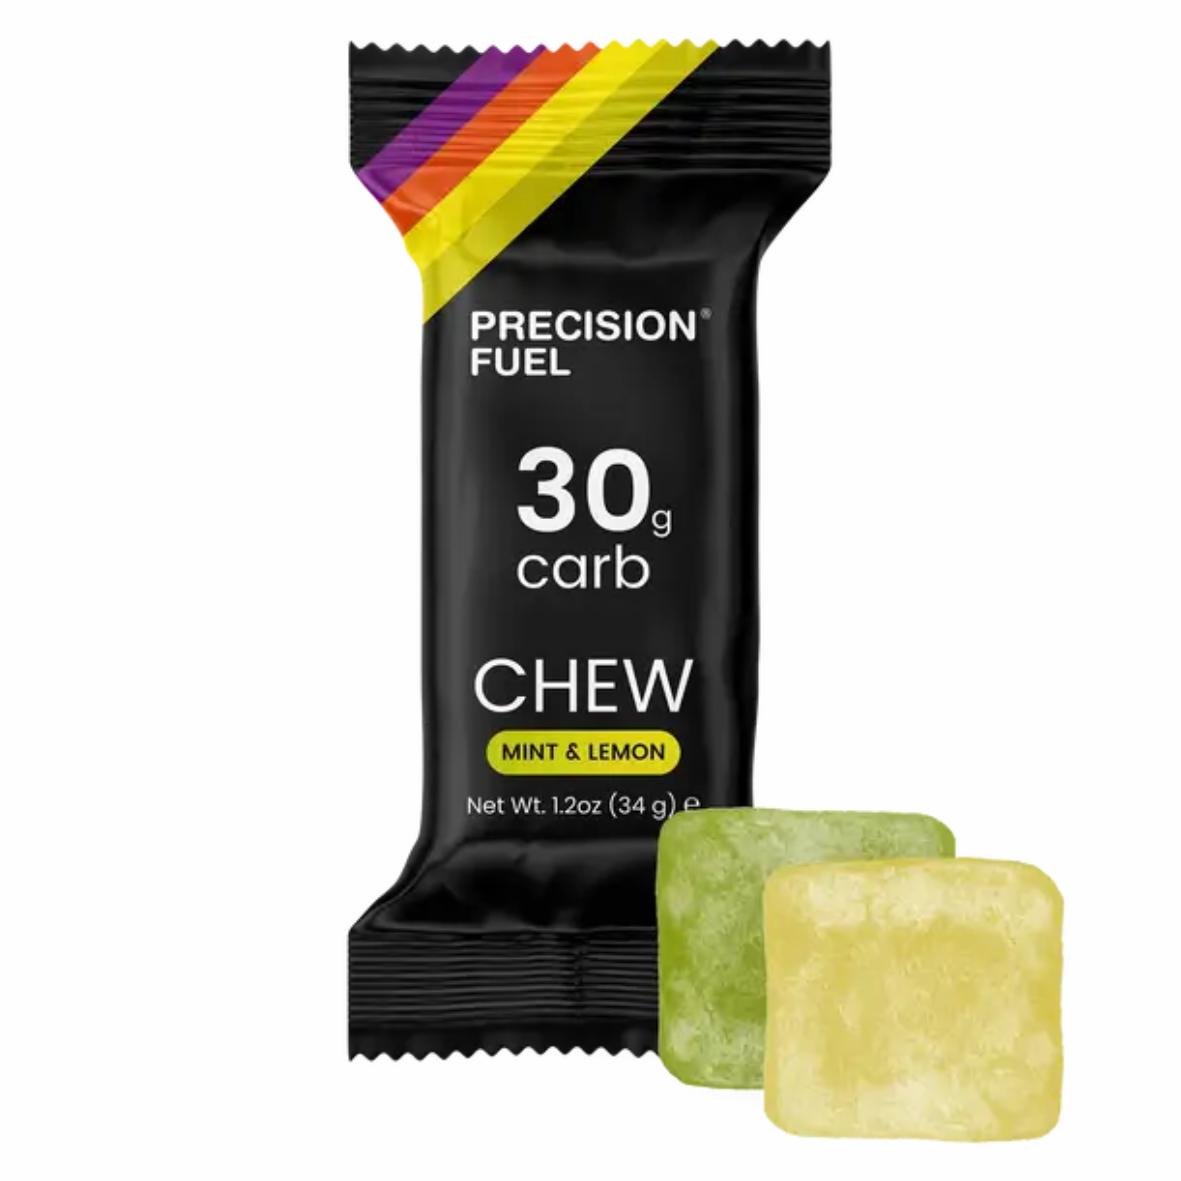 Precision fuel & hydration 30g carb energy chew mint & lemon flavour